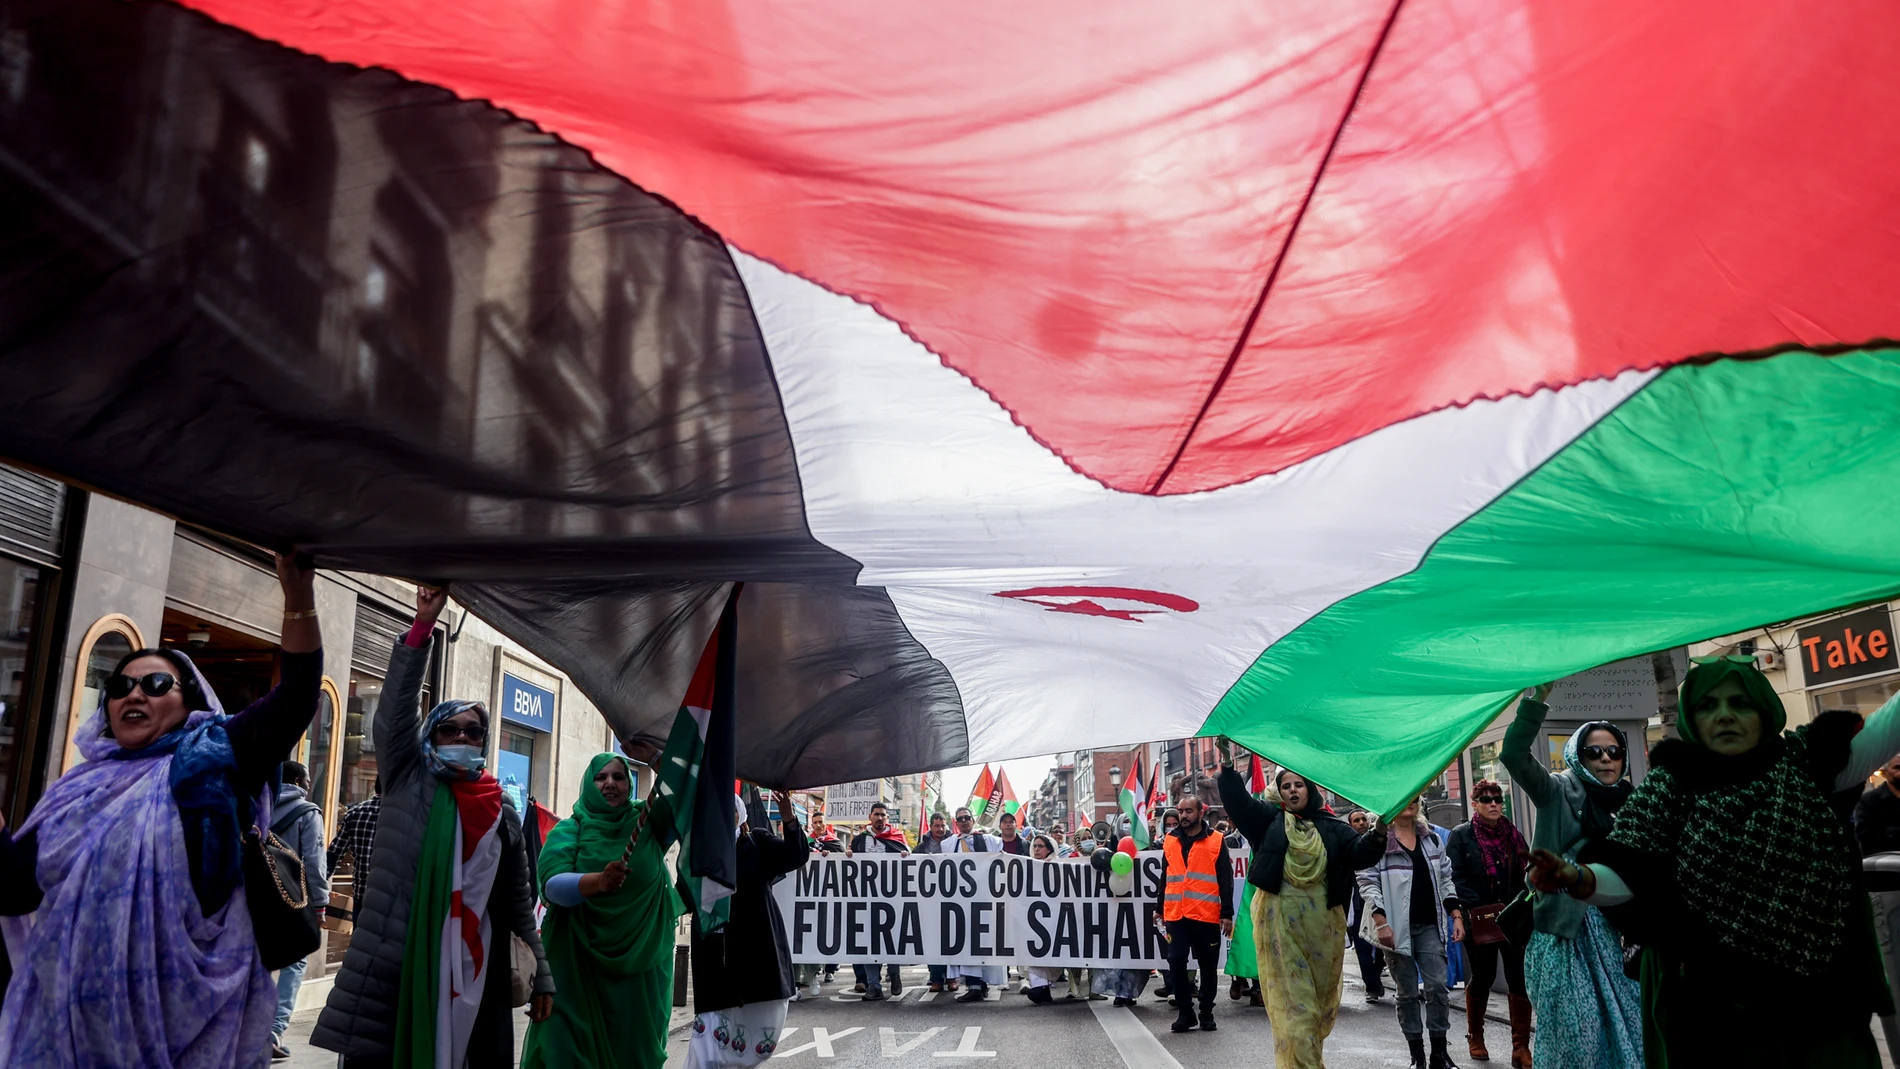 Varias personas protestan en una manifestación para exigir el derecho de autodeterminación del pueblo saharaui